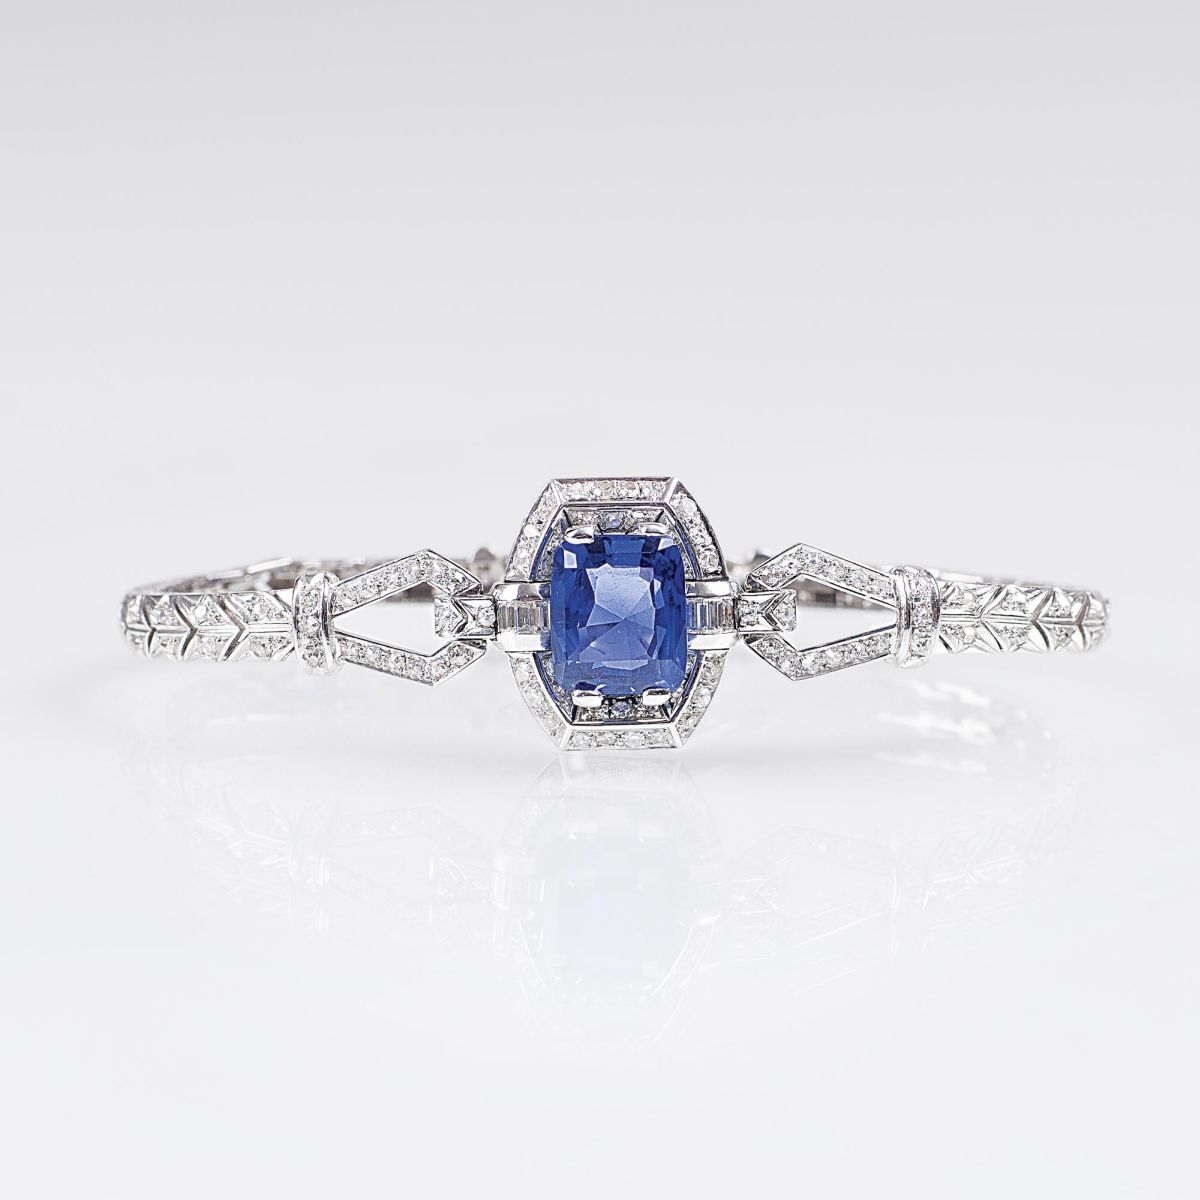 A splendid Art-déco Diamond Bracelet with Natural Sapphires